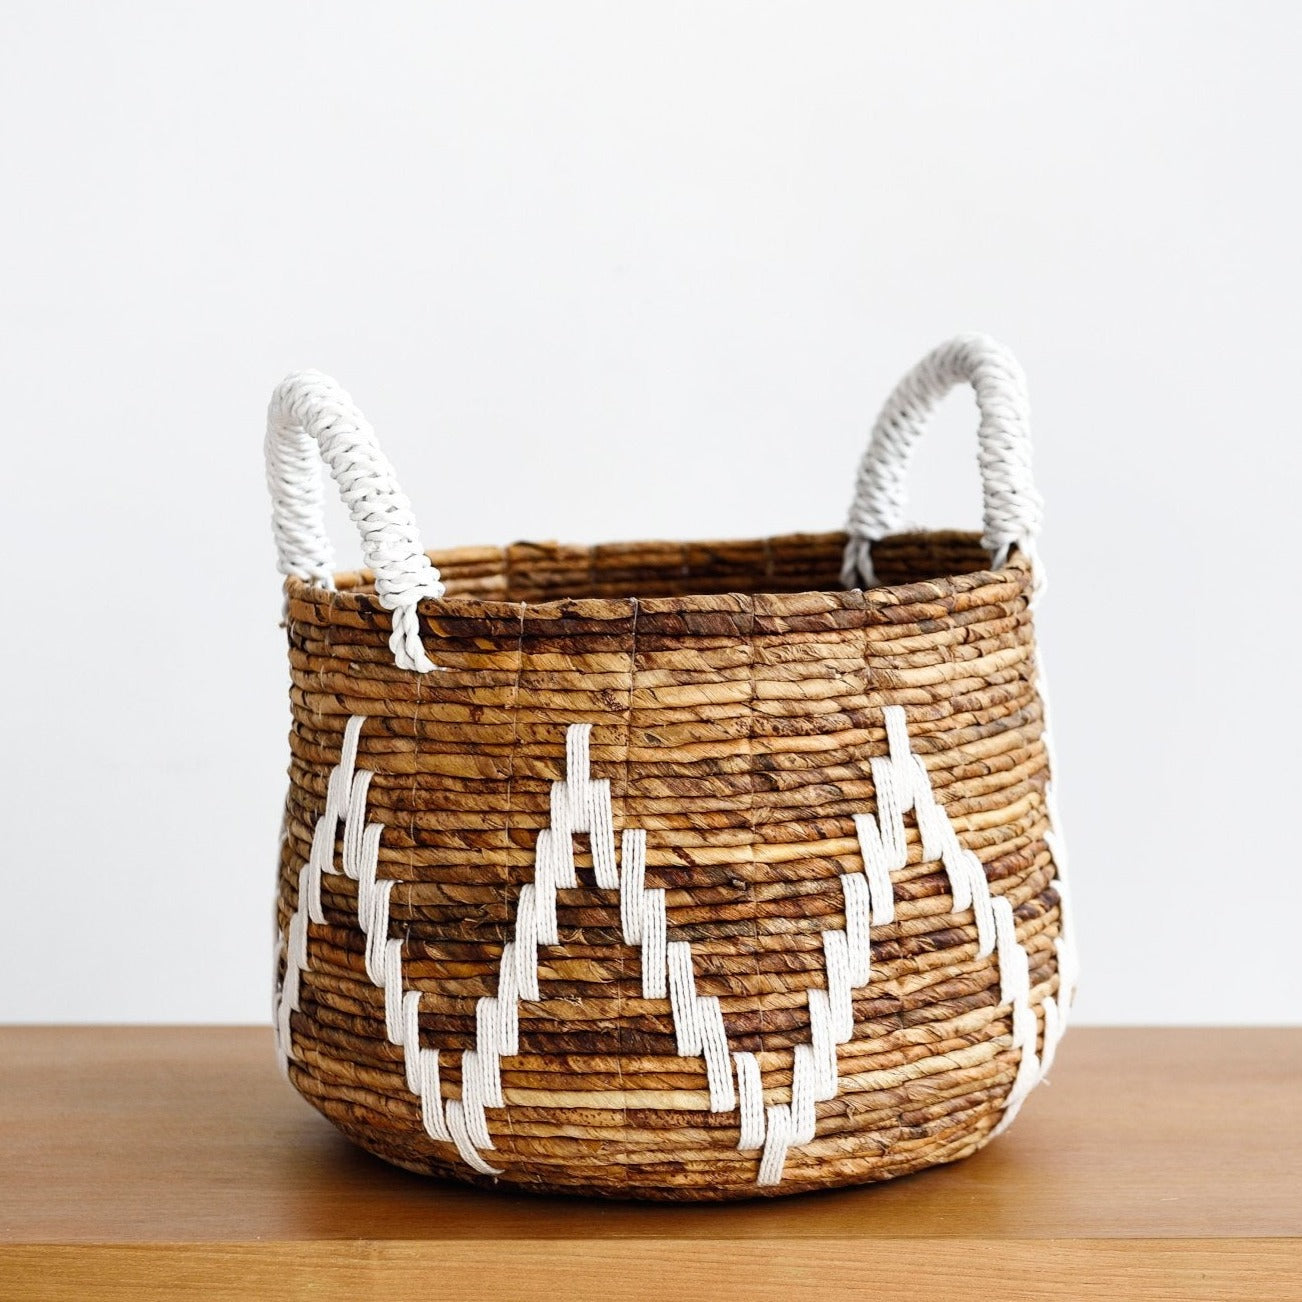 Ubud Banana Leaf Baskets - Baskets